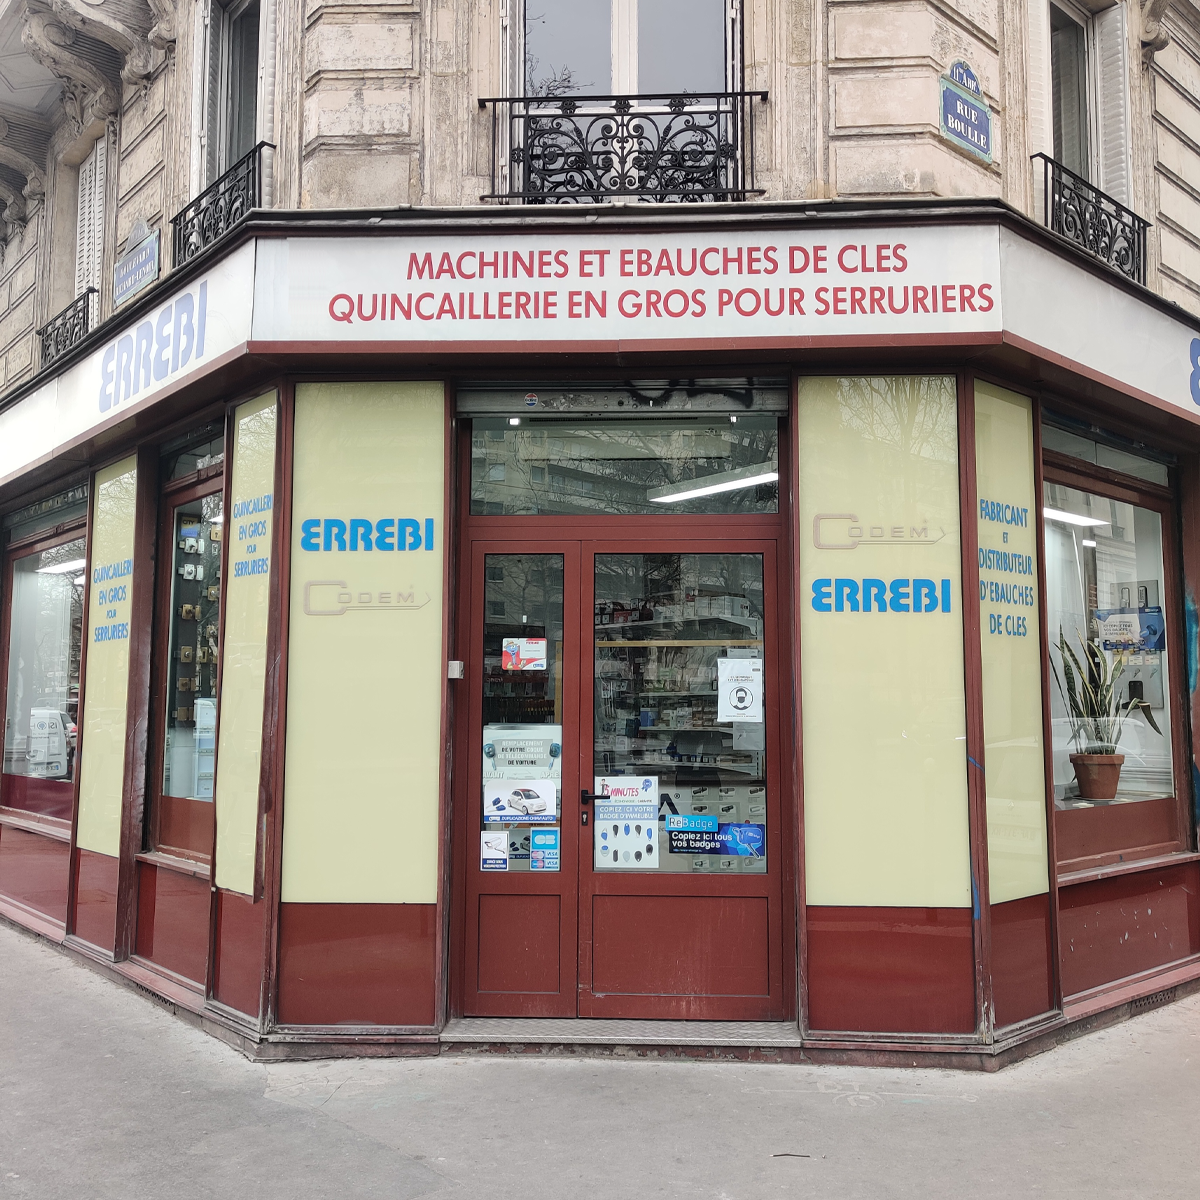 Errebi Codem Paris : Fournisseur ebauches clés machines repro